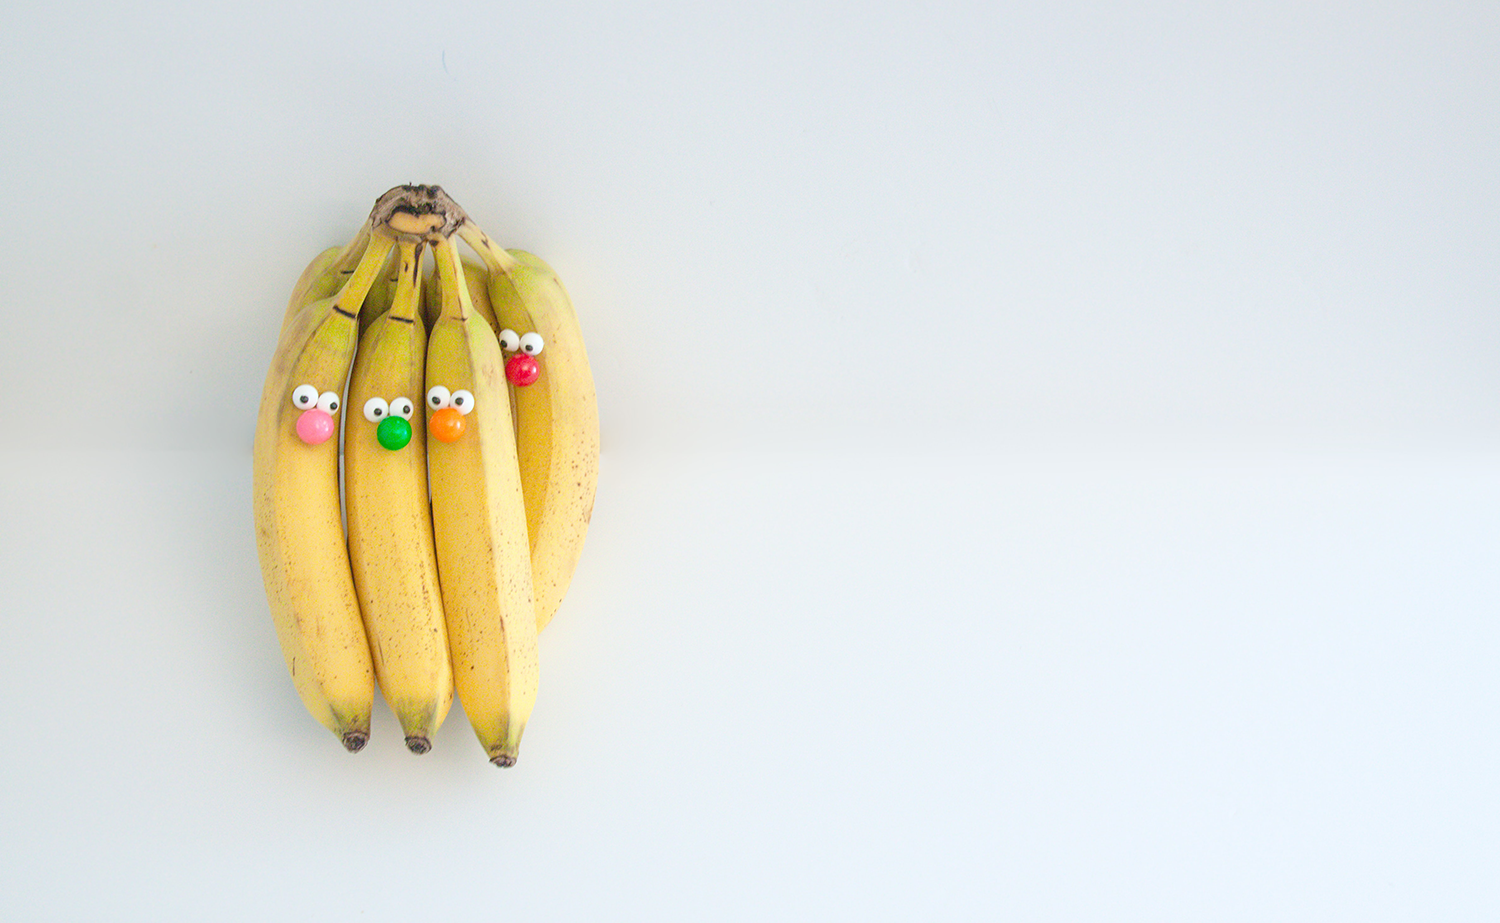 Comical group of bananas